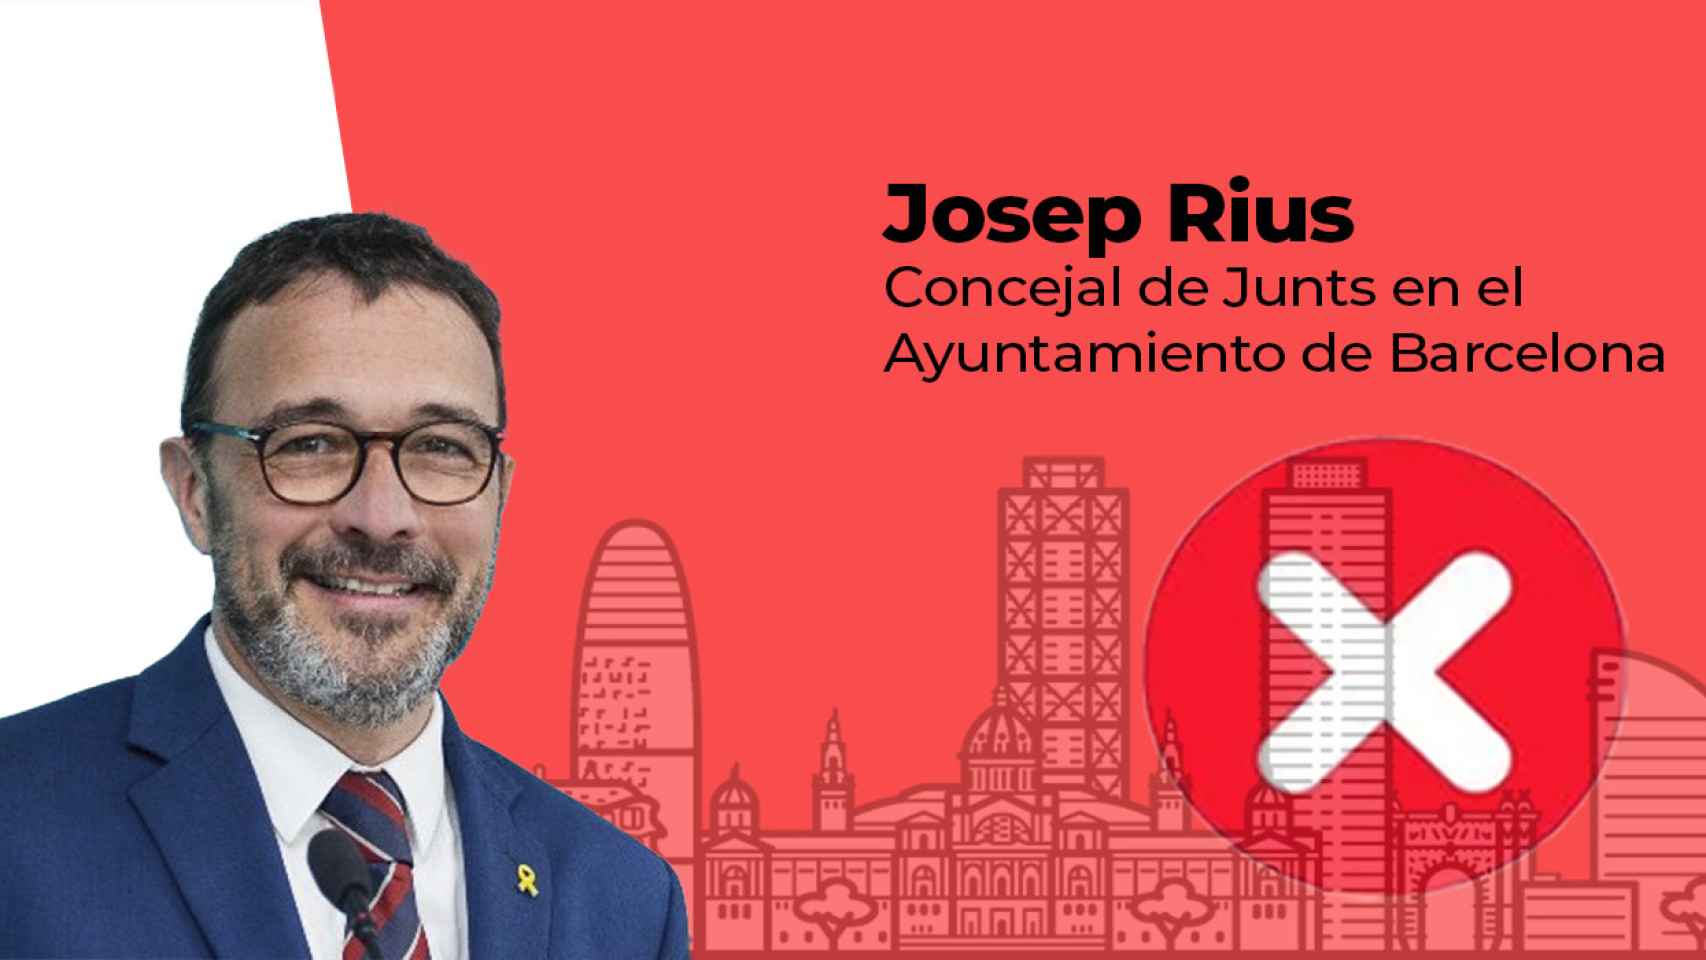 Josep Rius, concejal de Junts per Catalunya en el Ayuntamiento de Barcelona